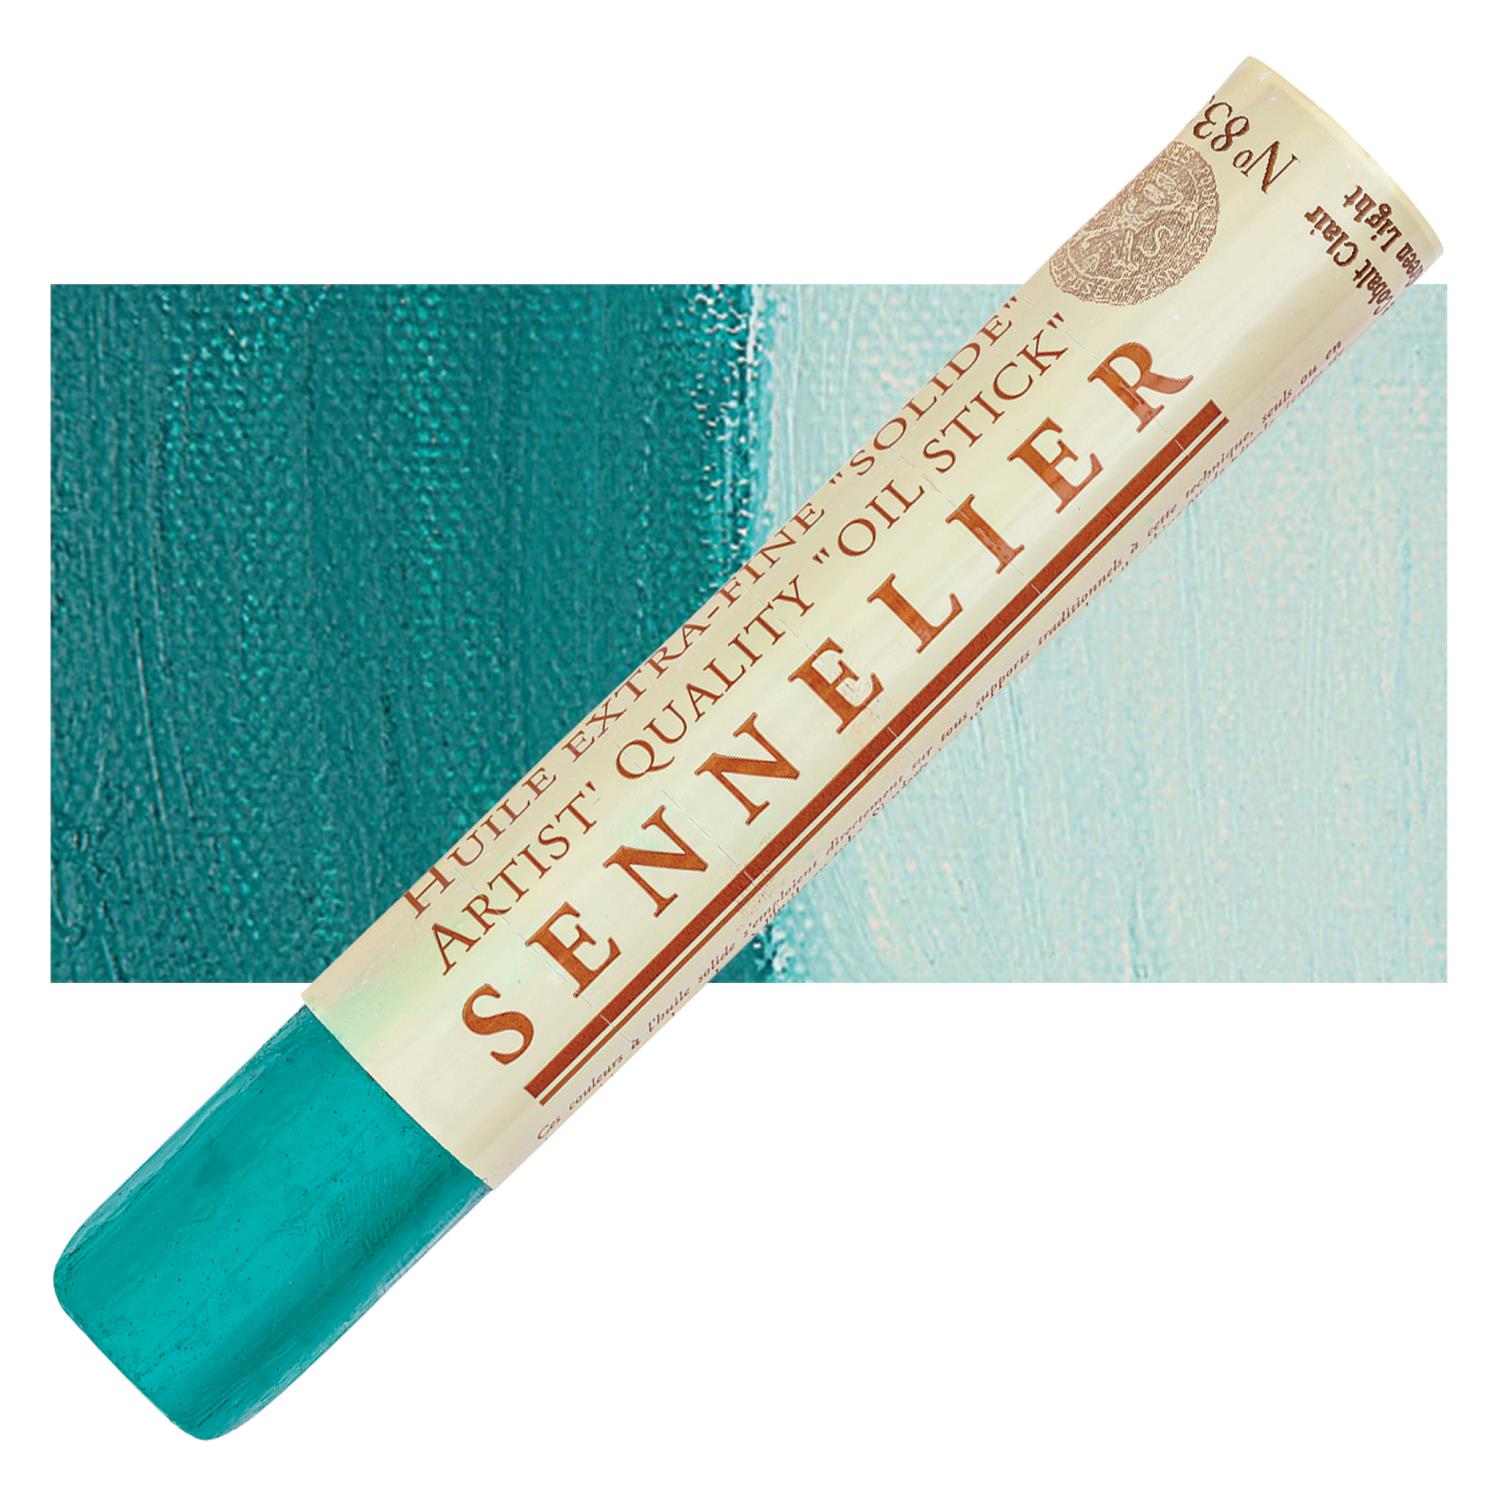 Sennelier Artist Oil Stick 38ml - 833 Cobalt Green Light S2